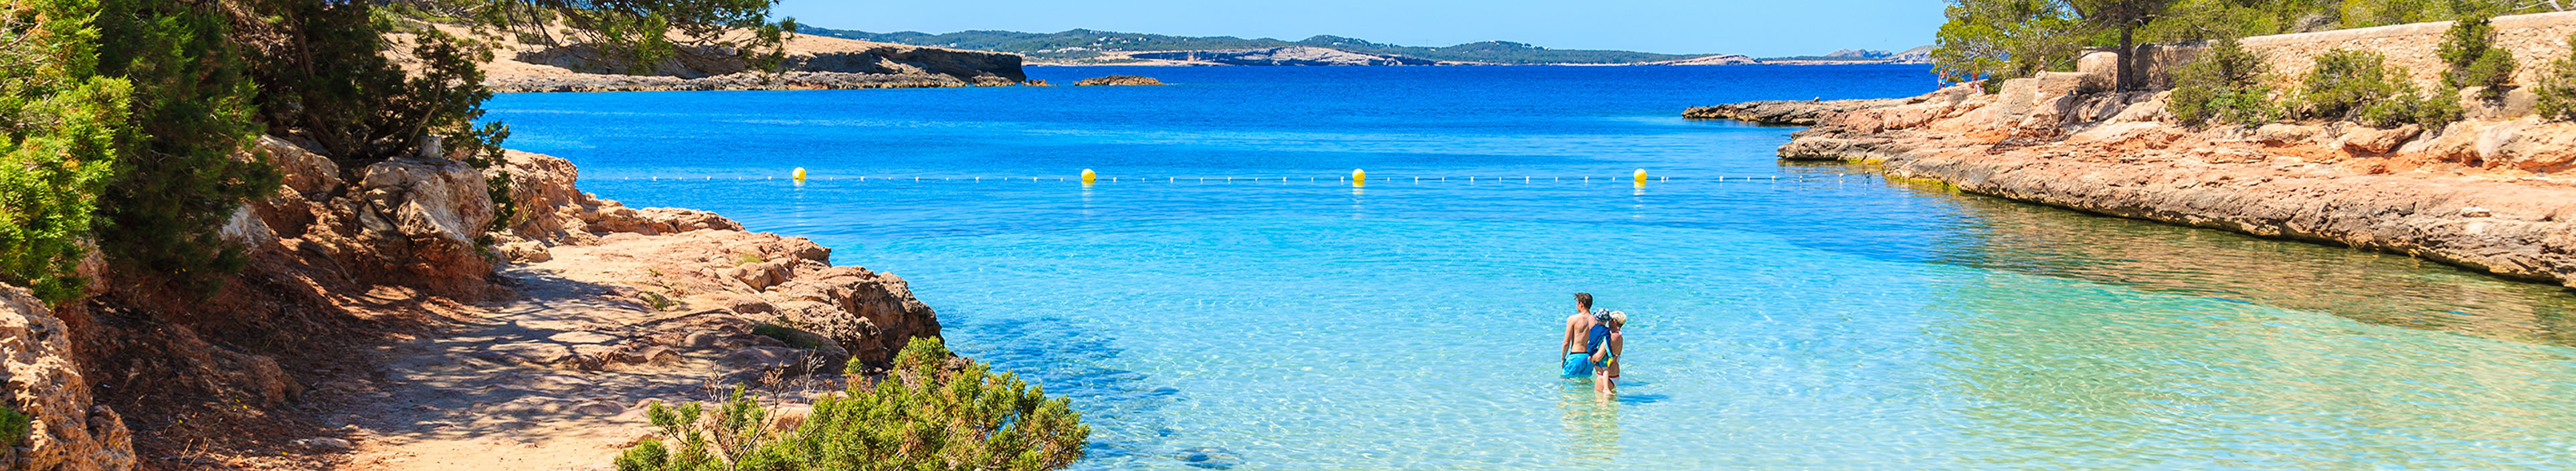 Familie schwimmt im Meer an einer Bucht auf Ibiza